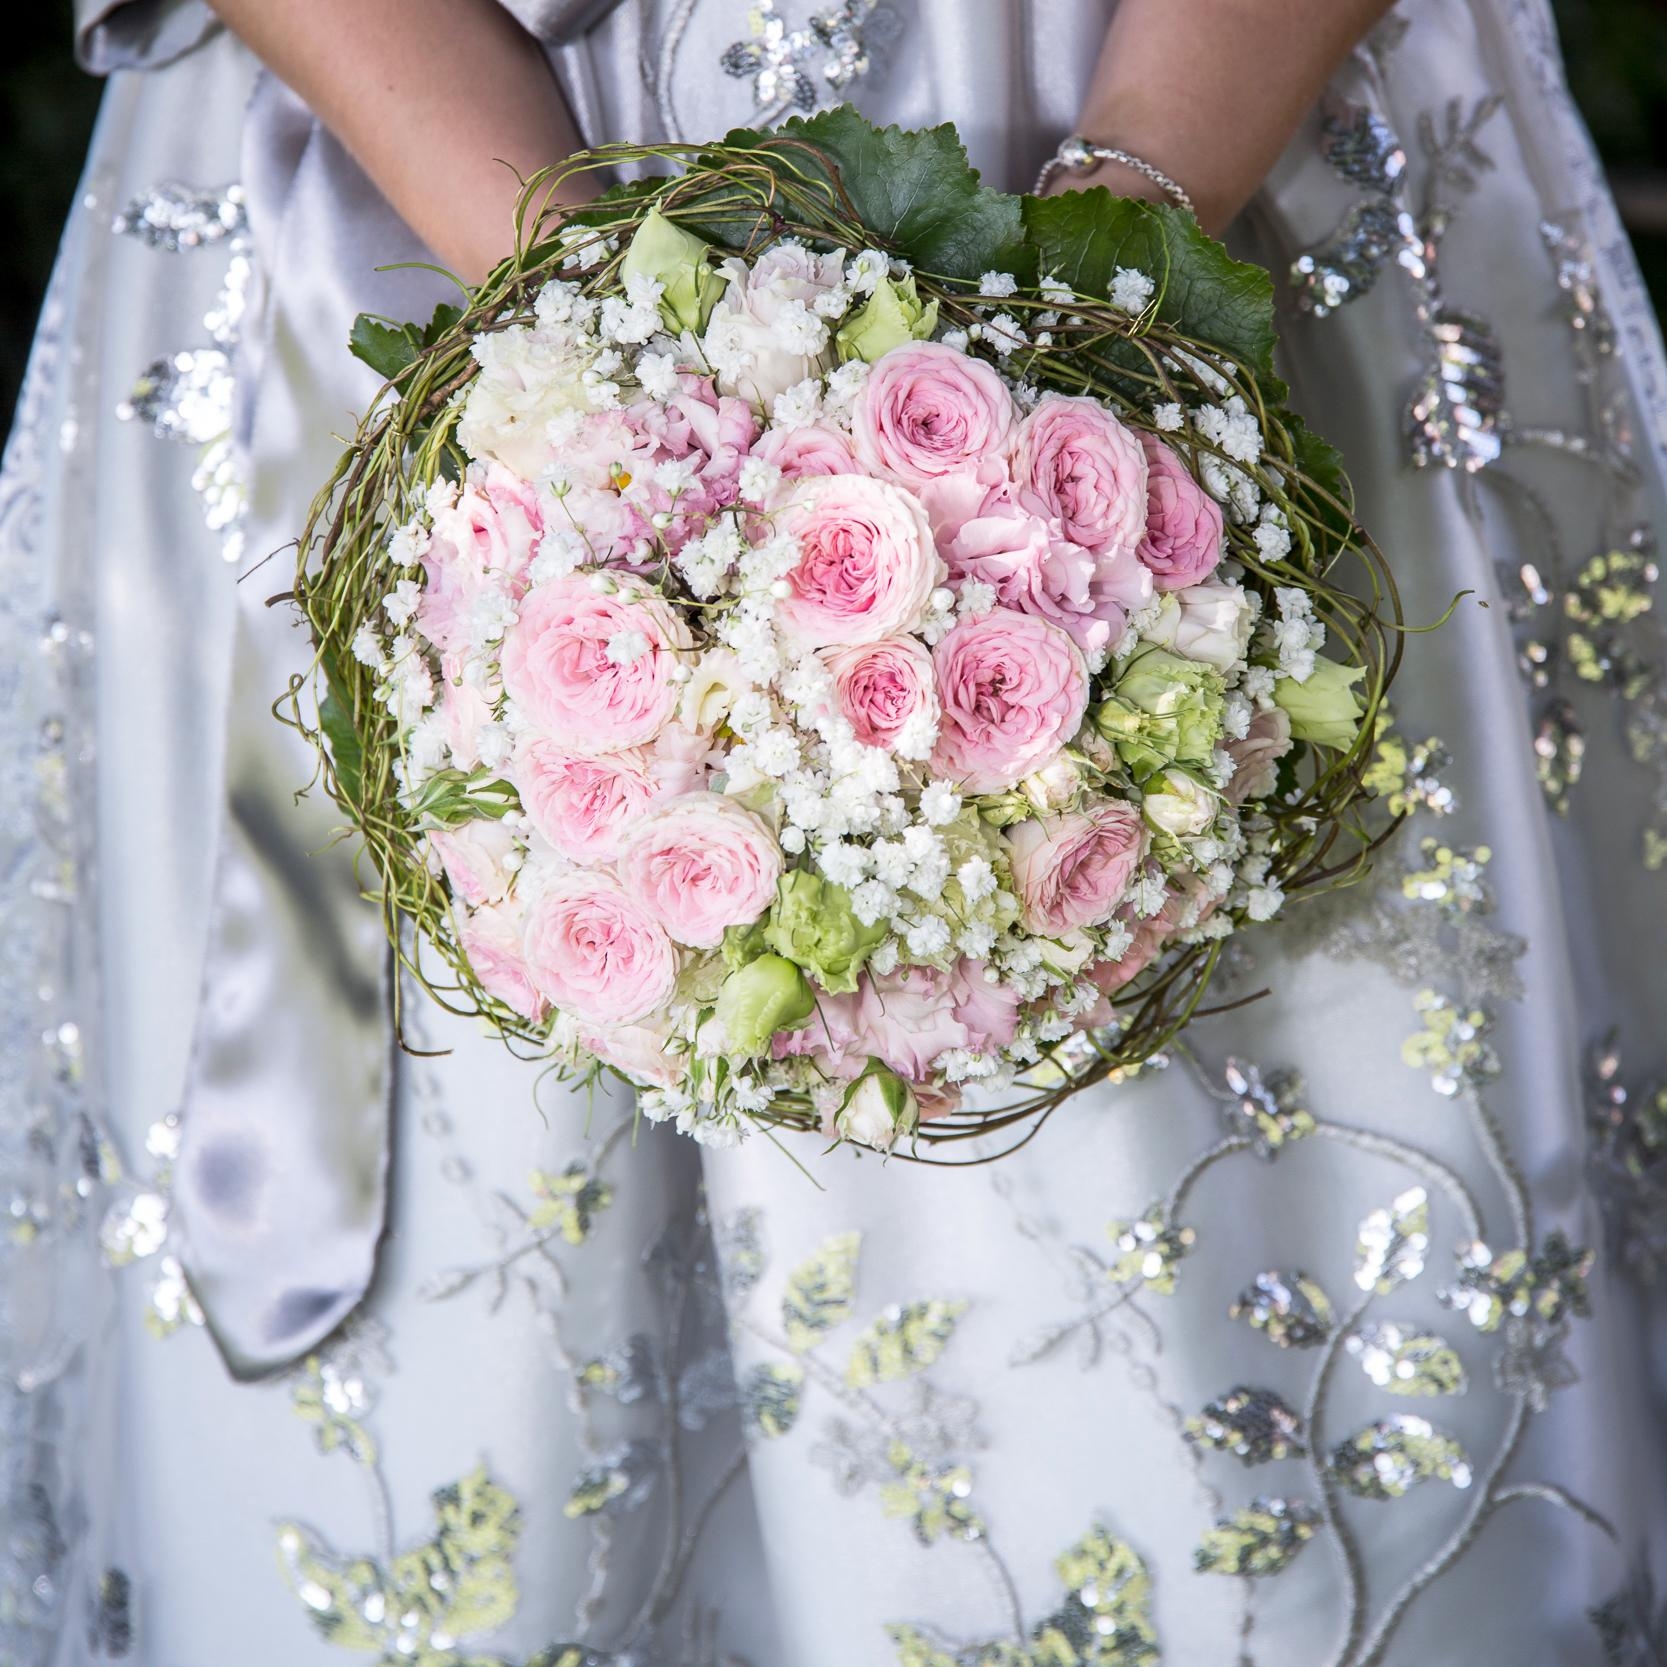 Trachtenhochzeit mit wunderschönen Brautstrauß 👰 

#hochzeit #brautstrauß #tracht